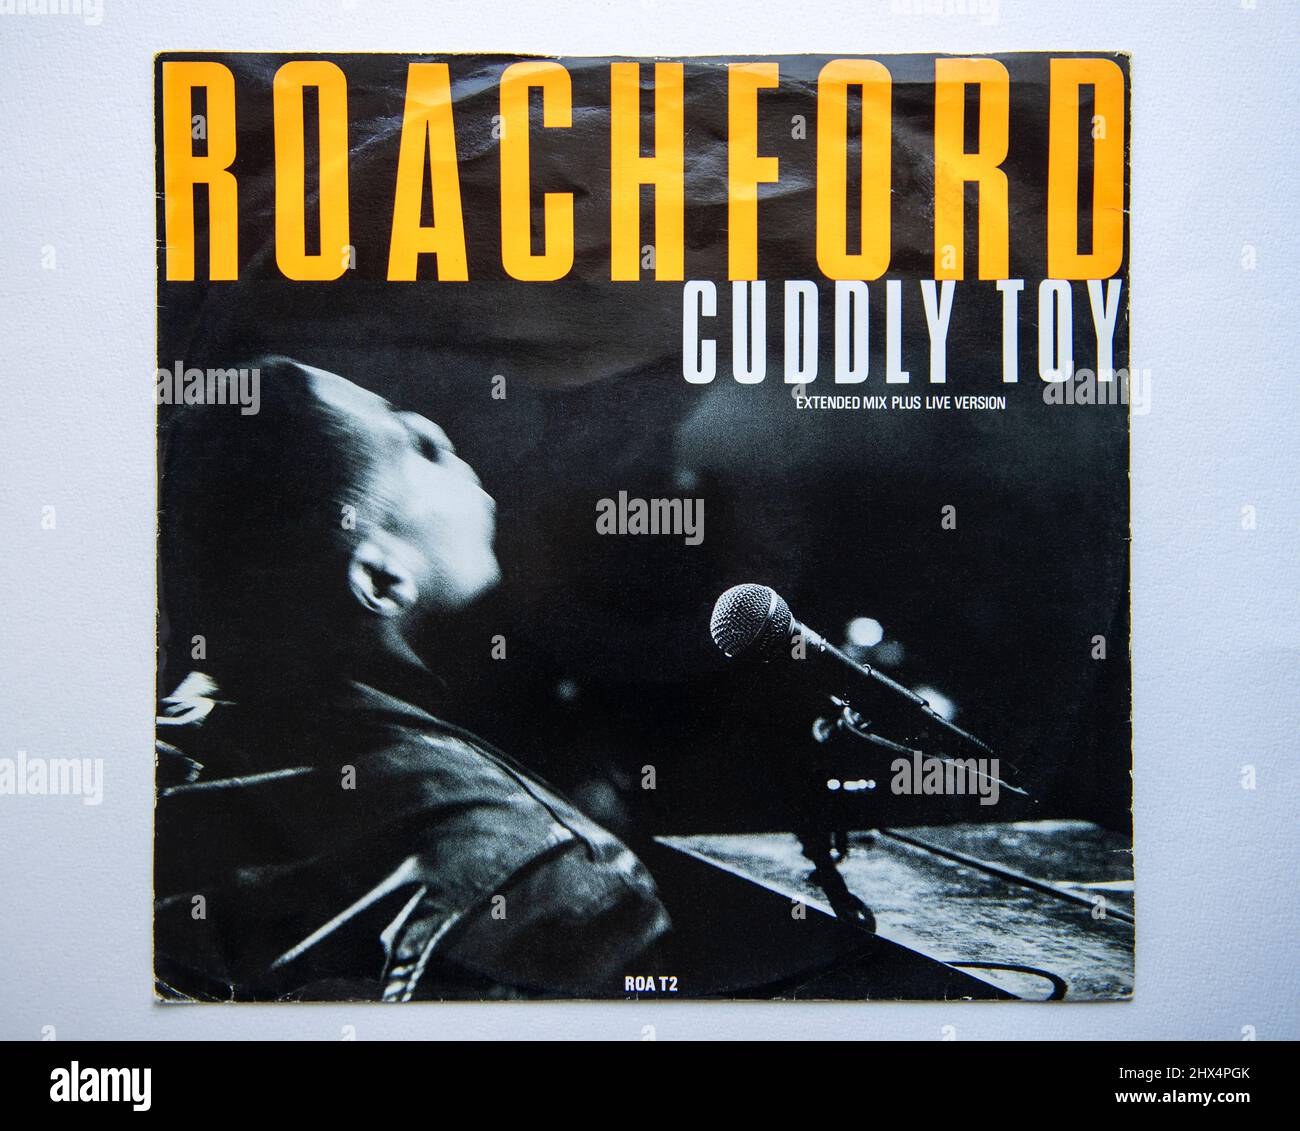 Couverture de la photo de la version simple de 12 pouces de Cudddddly Toy par Roachford, qui a été publié en 1988 Banque D'Images